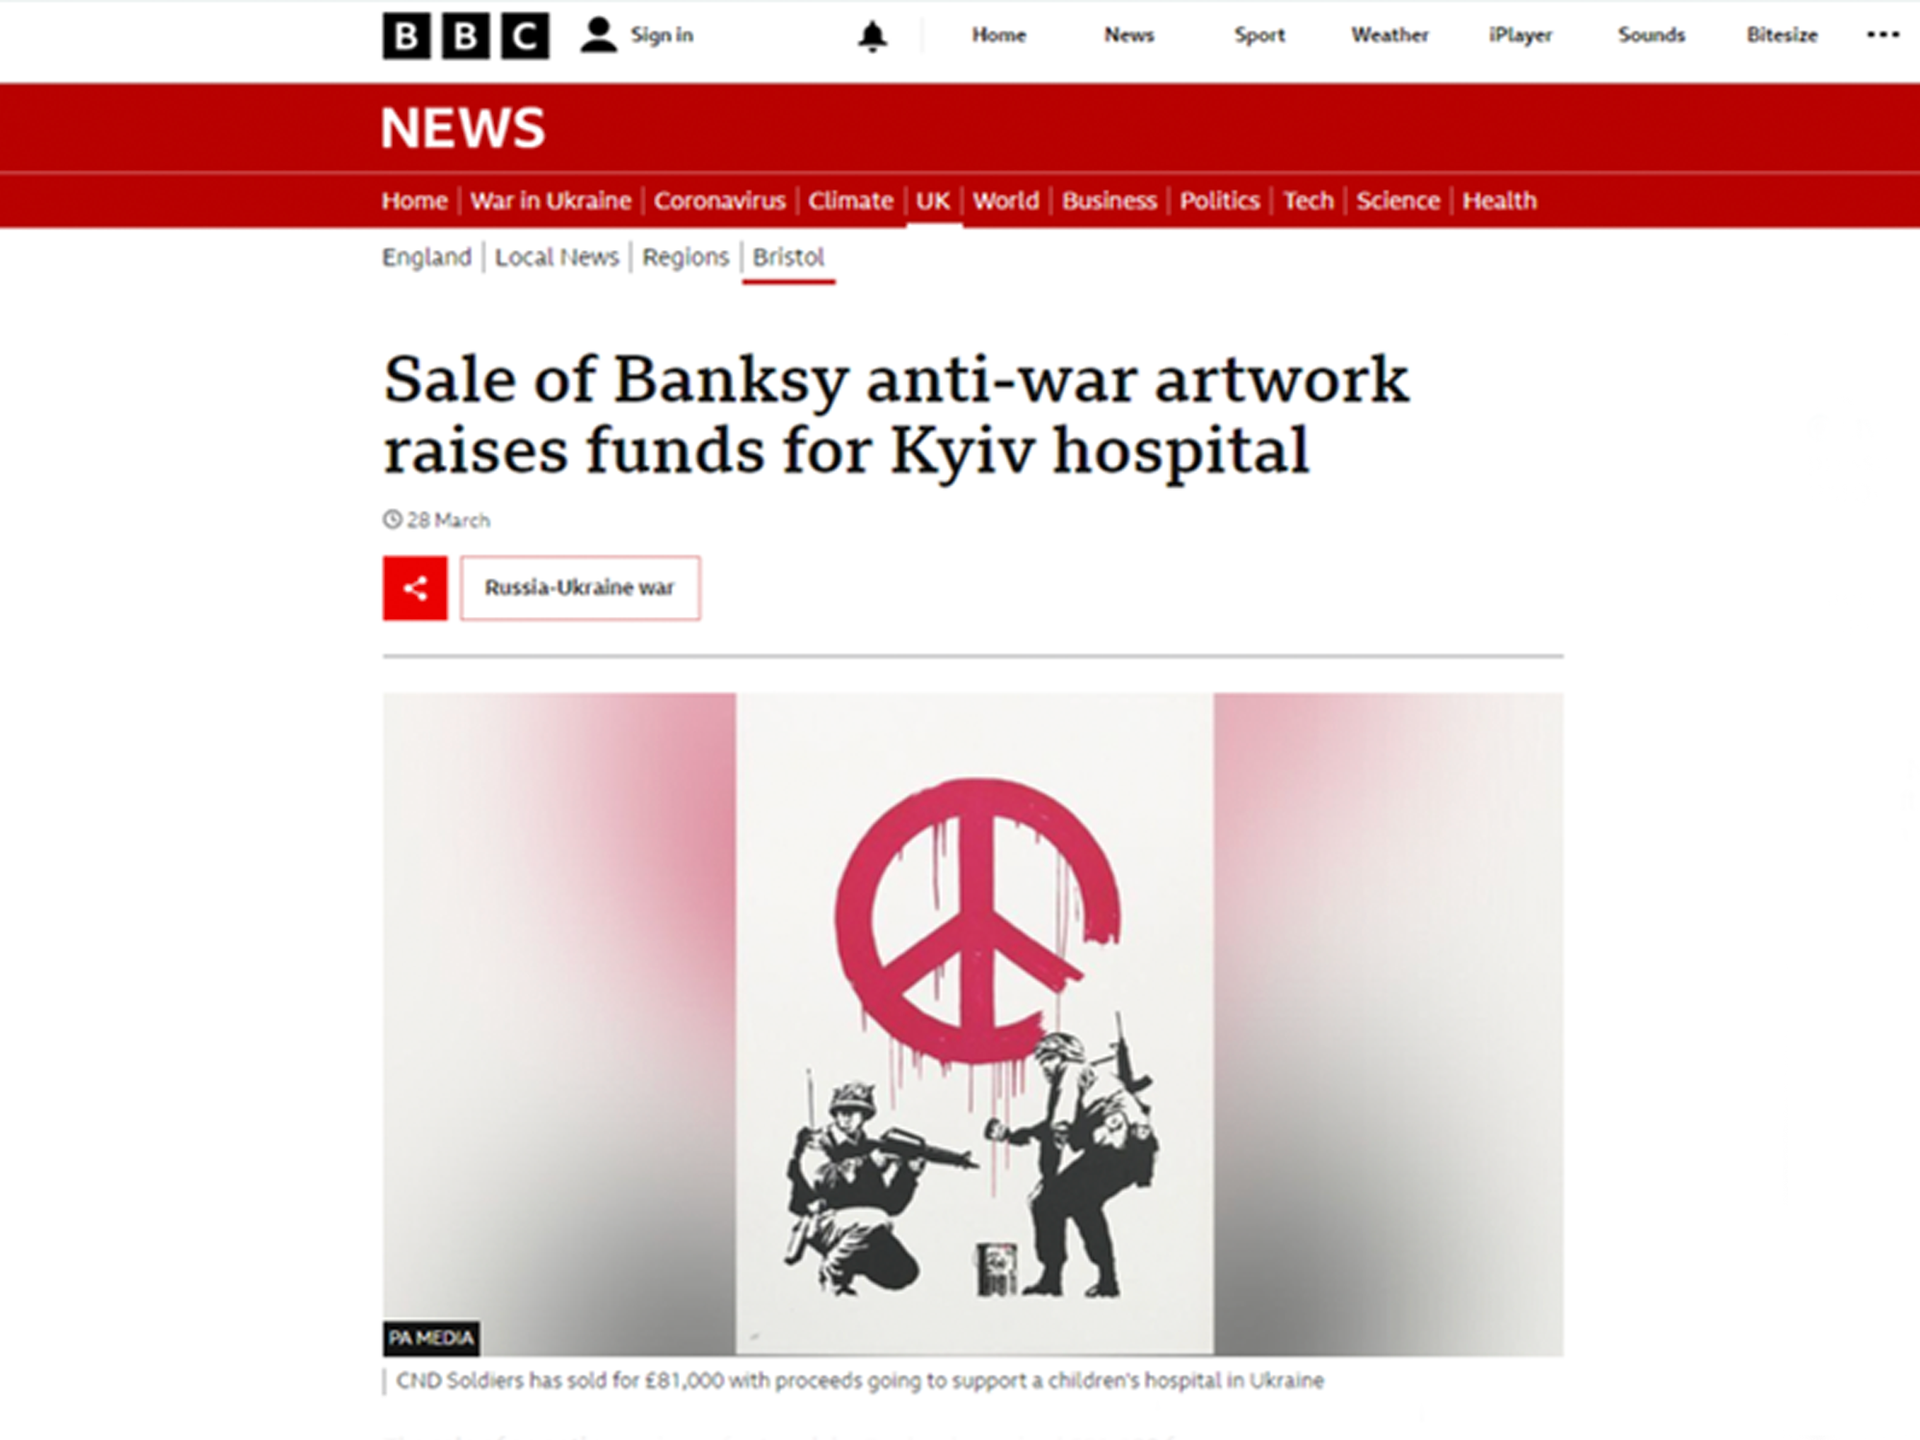 BBC - Banksy for Ukraine - MyArtBroker